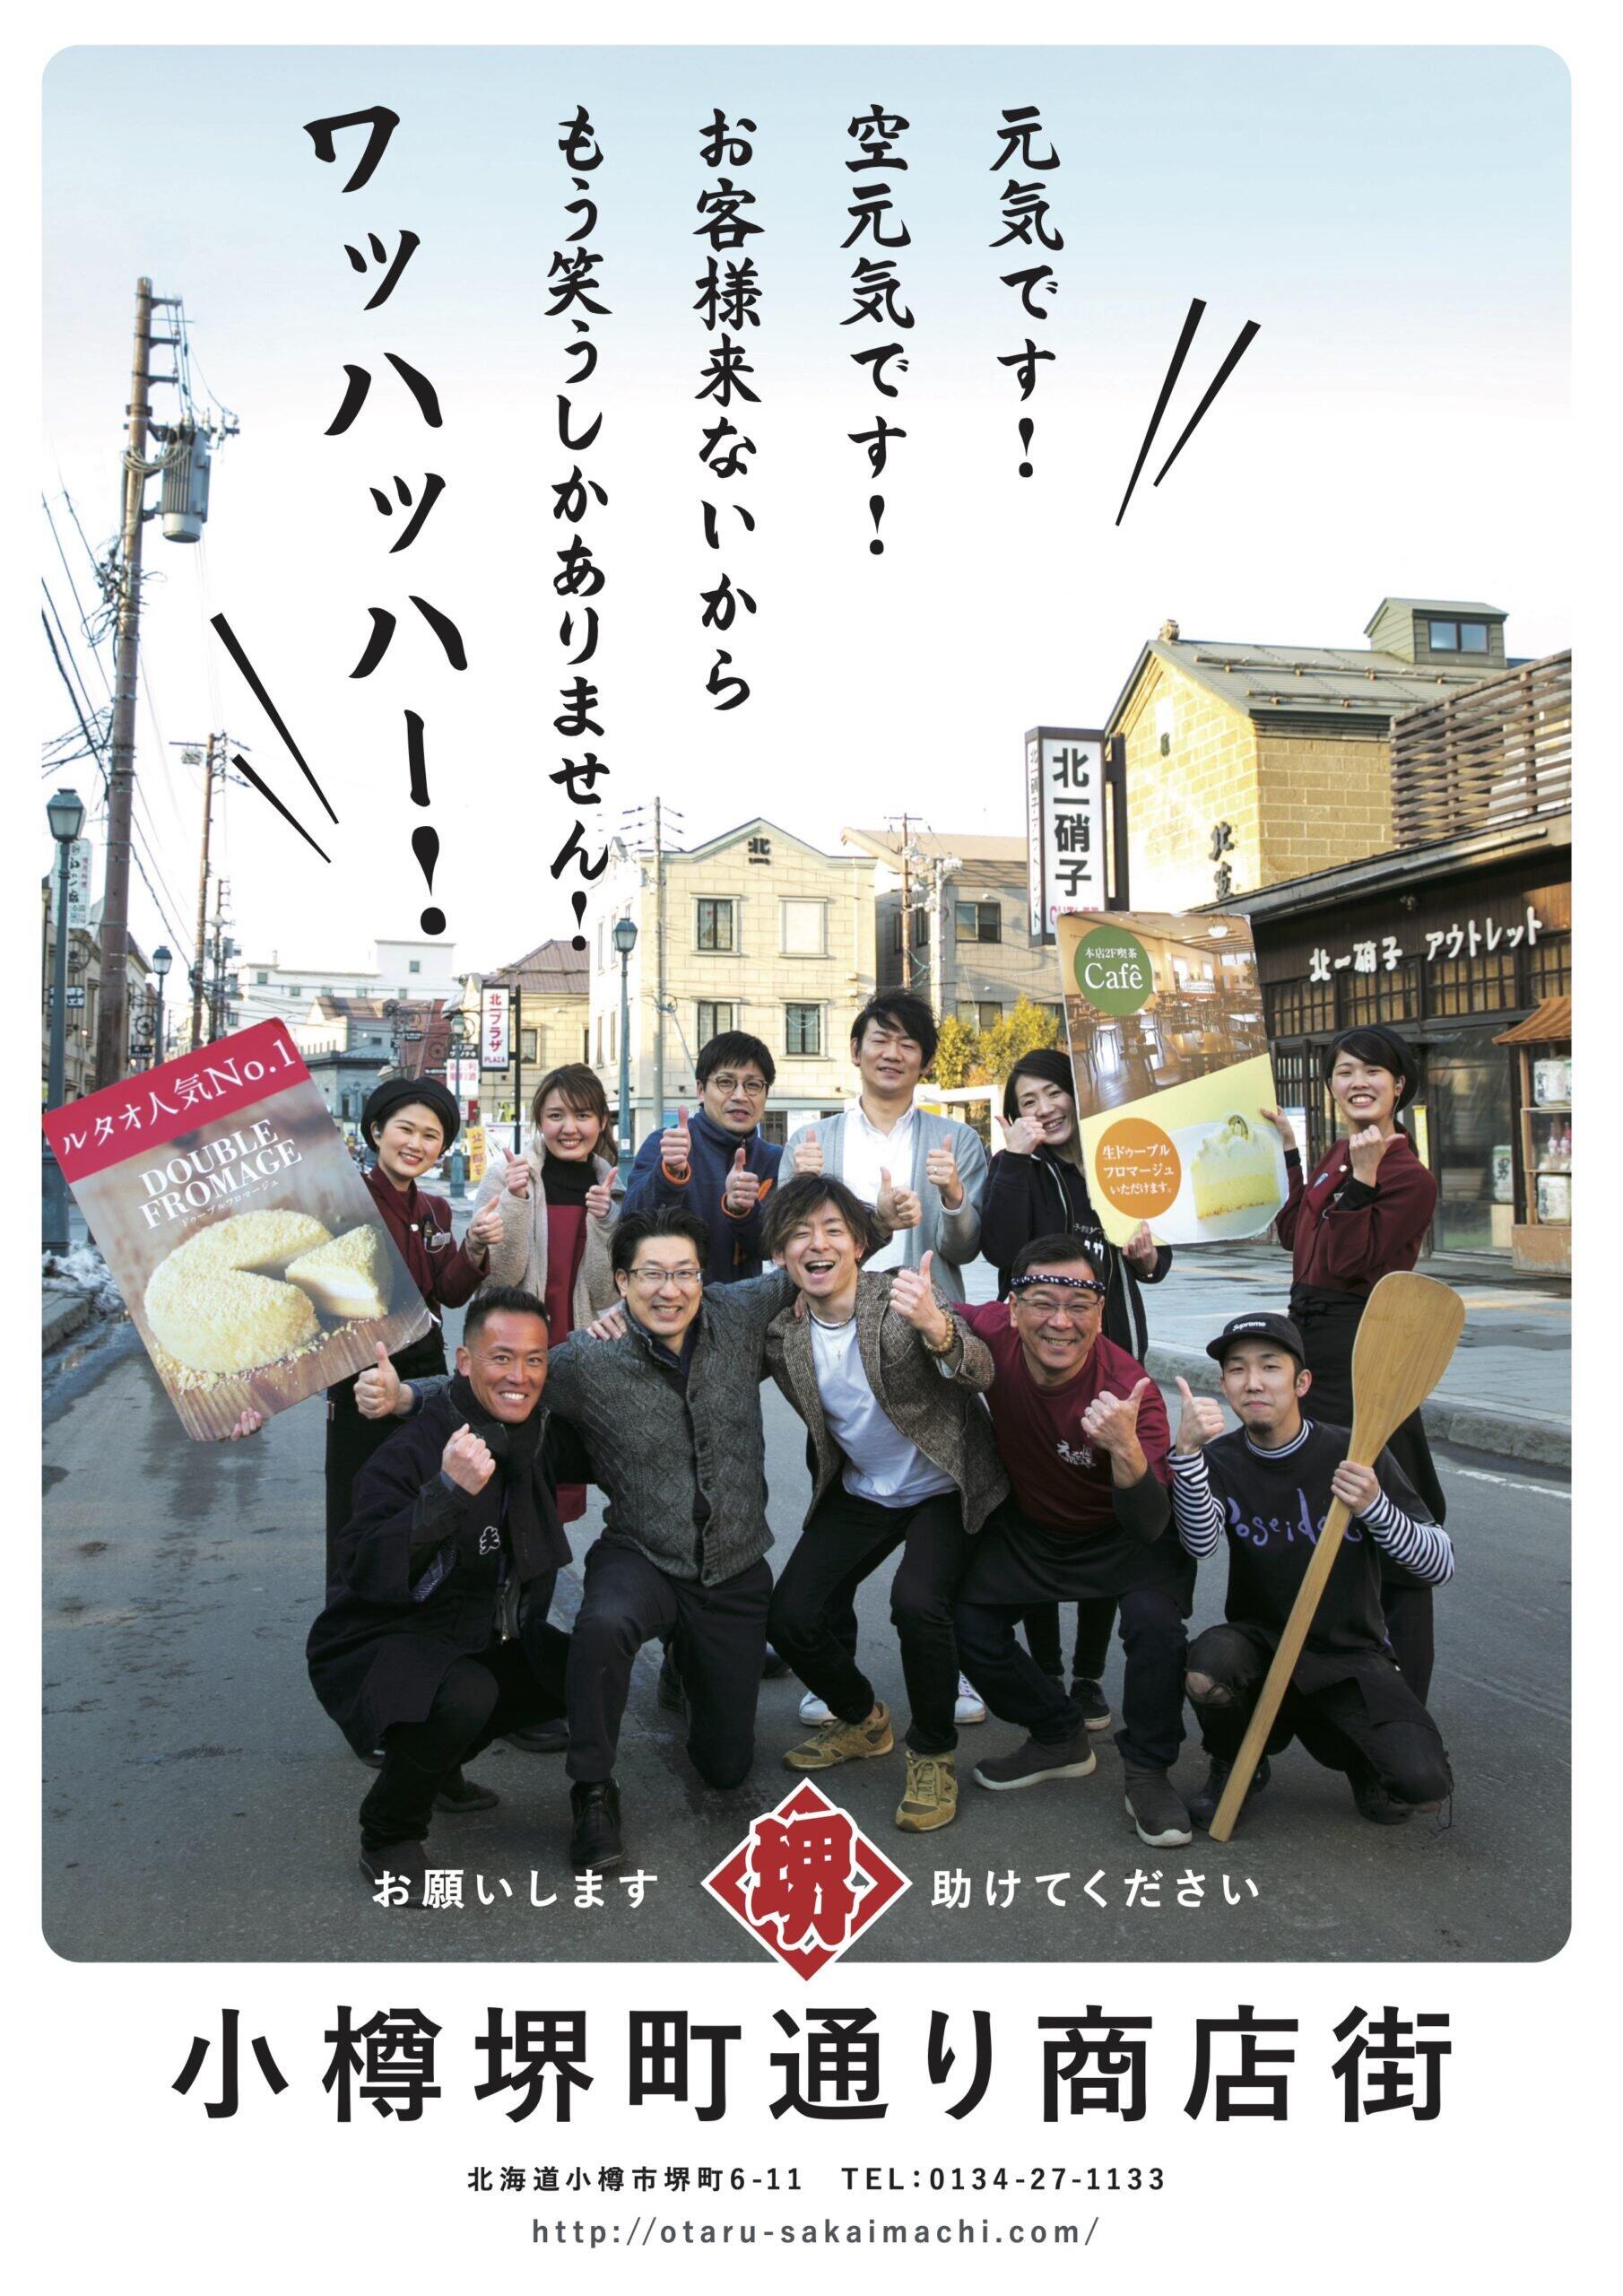 小樽堺町通り商店街が作成した、ユーモア溢れるポスター